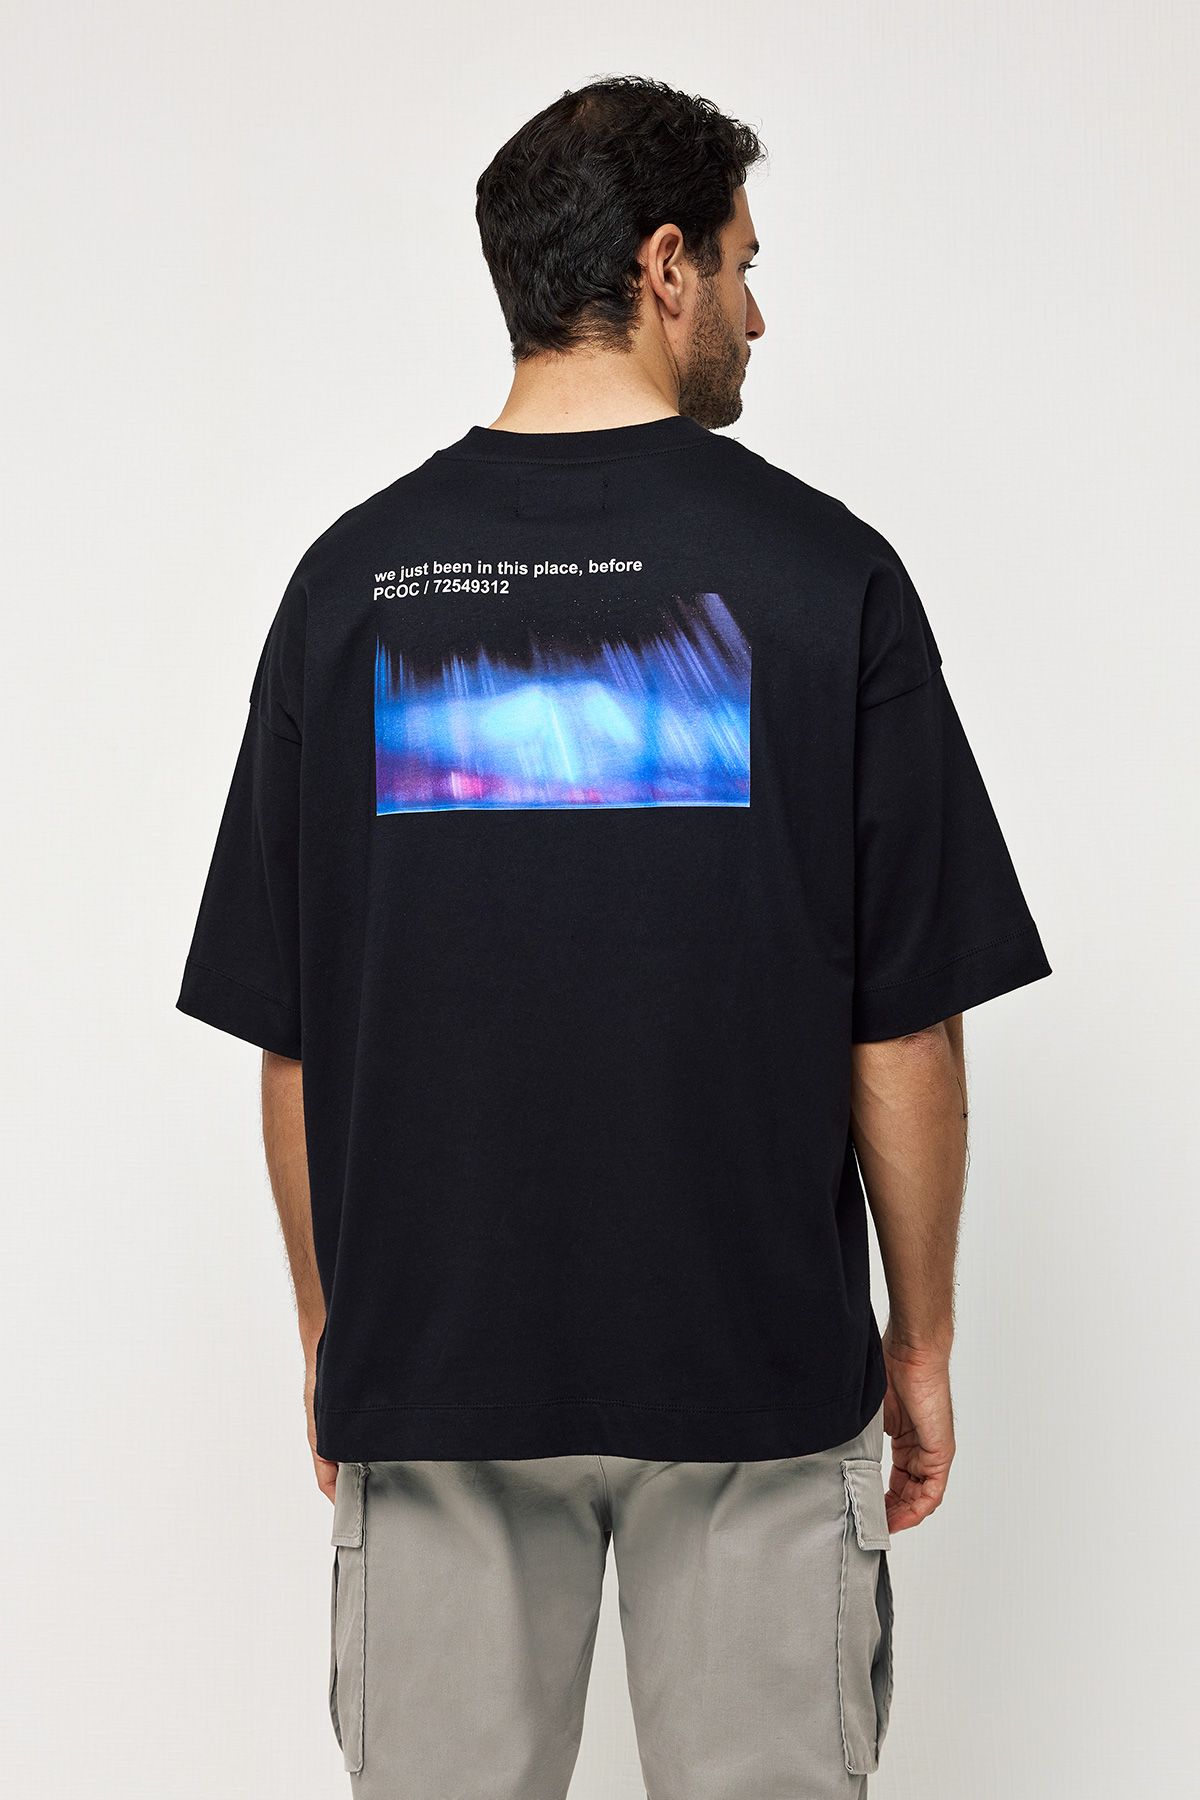 Βαμβακερό T-Shirt με Τύπωμα Aurora στην Πλάτη